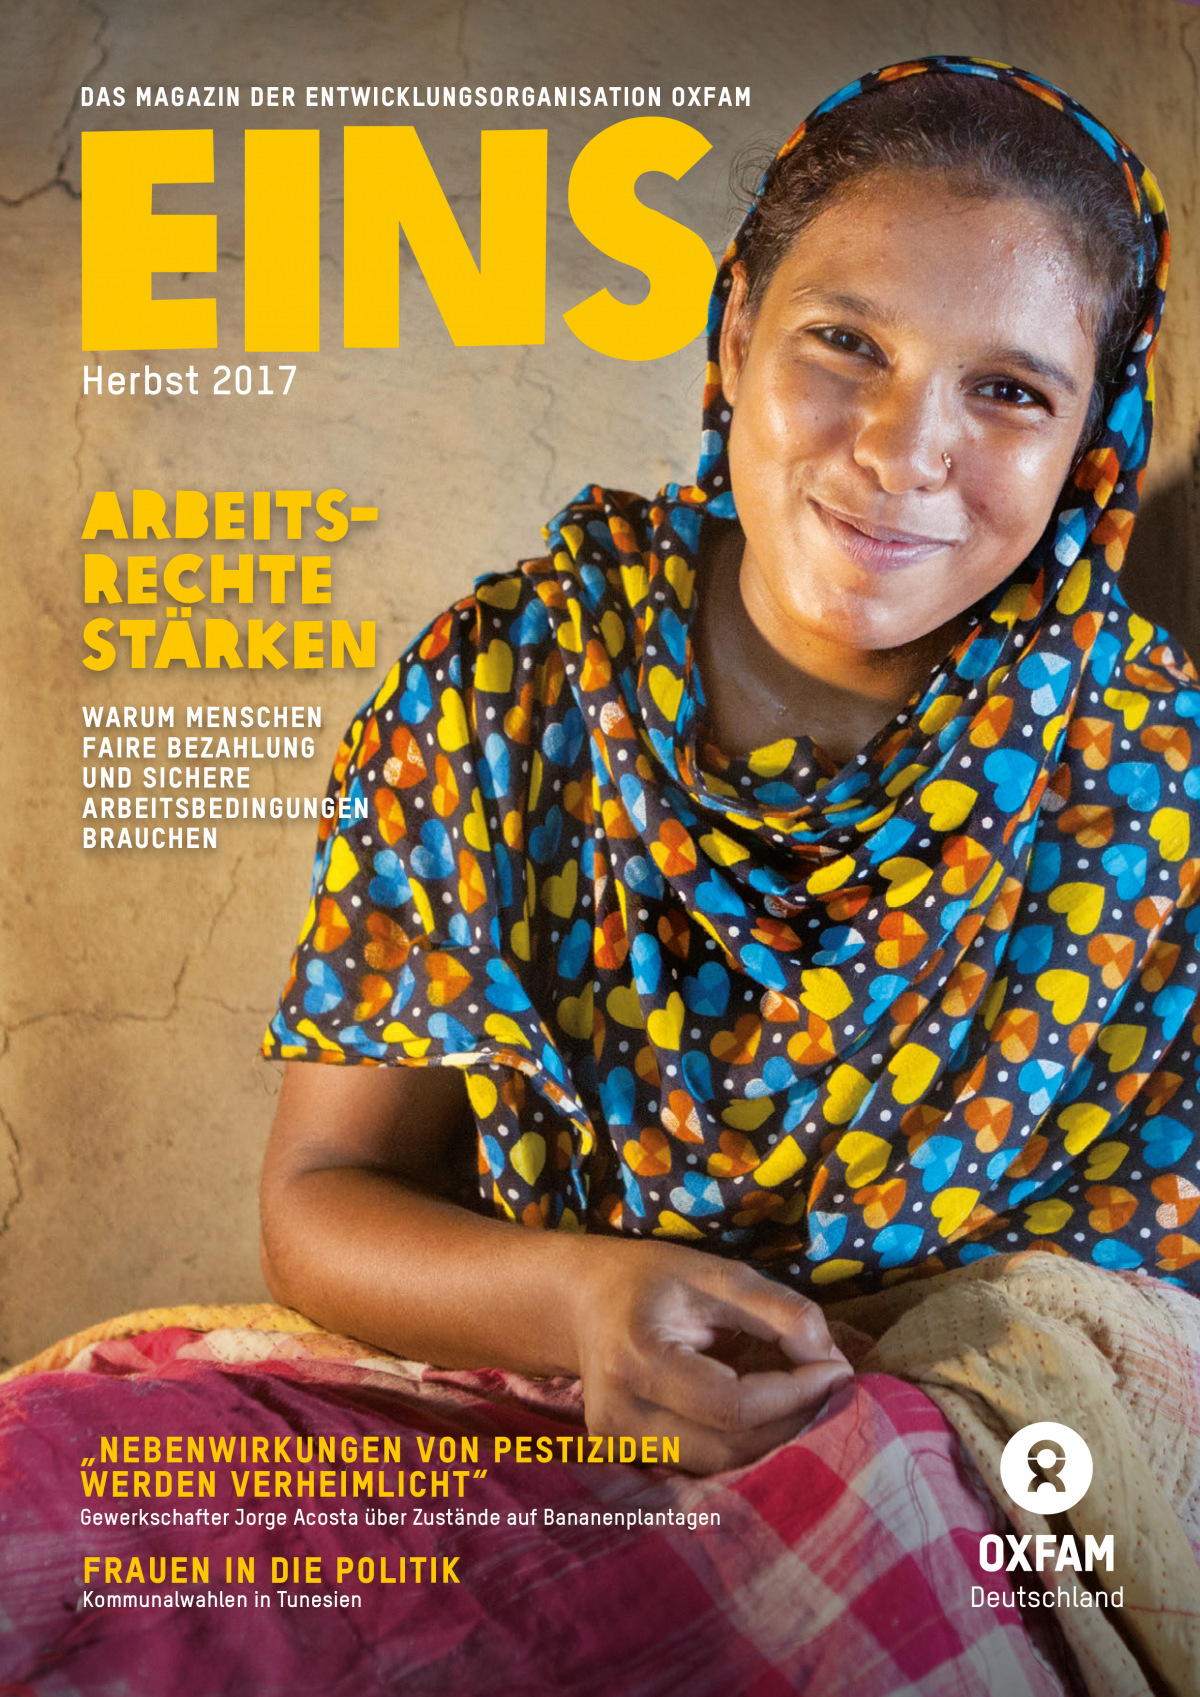 Titelbild vom Oxfam-Magazin EINS (Herbst 2017)